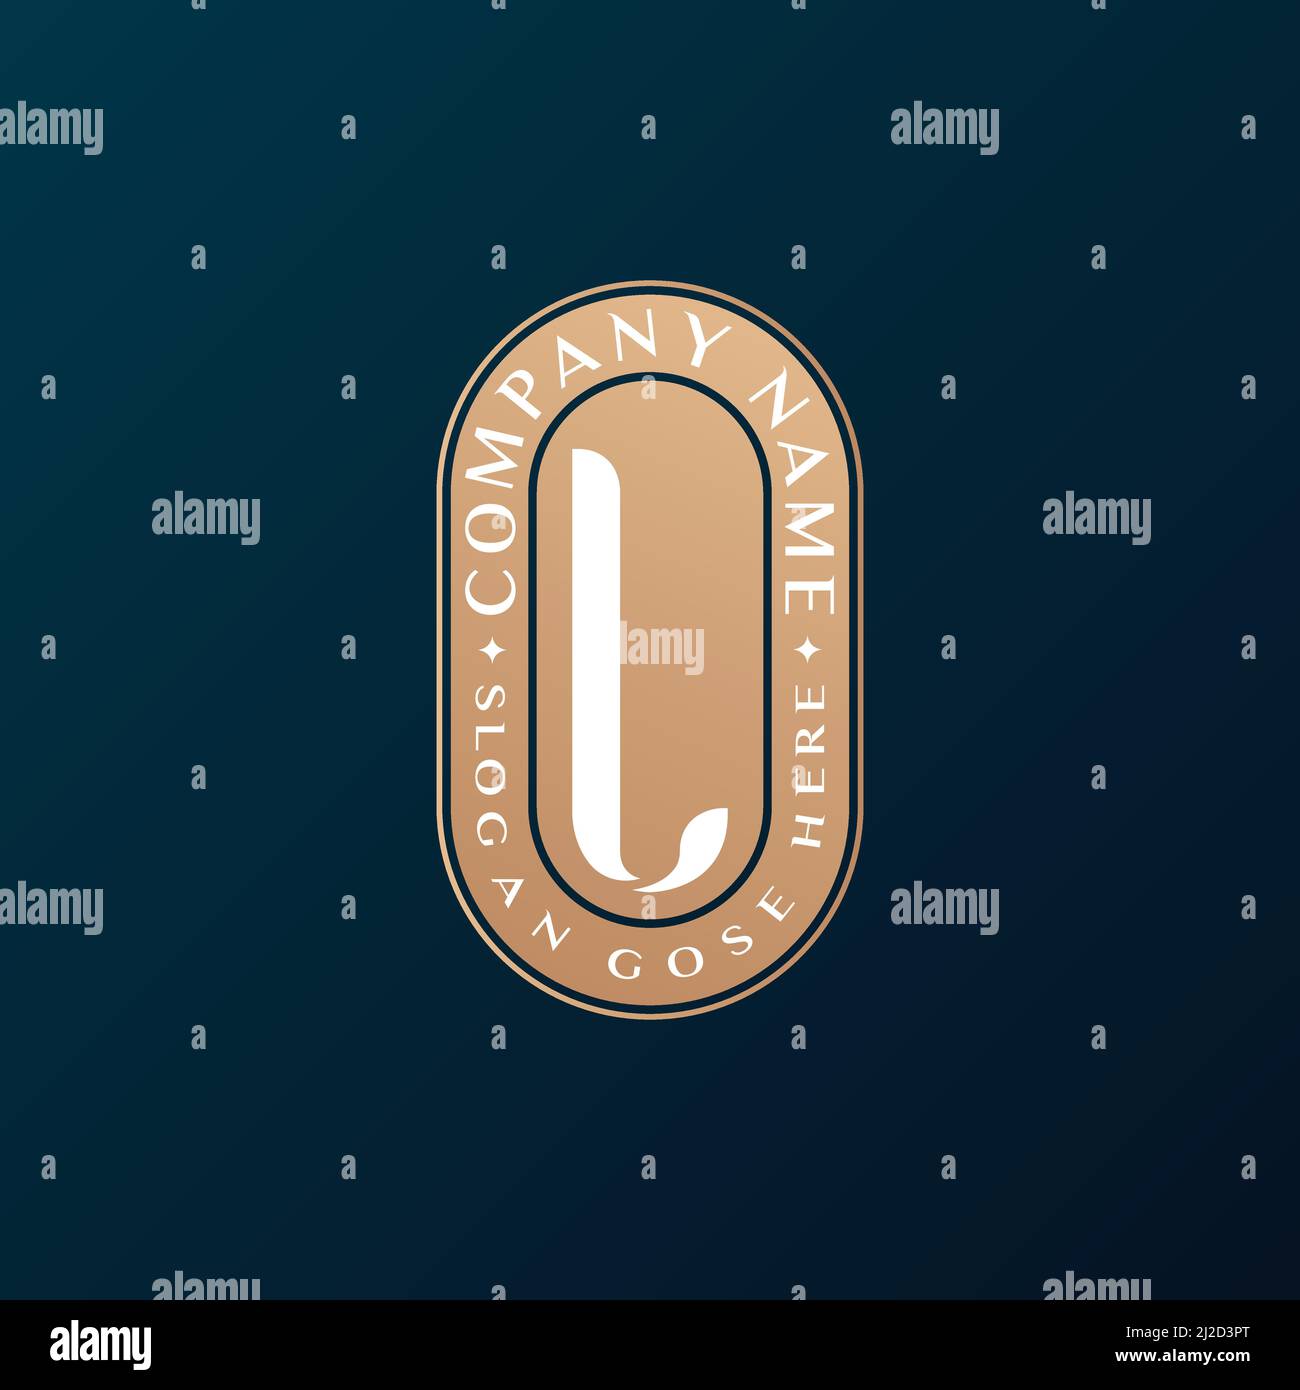 Abstrait Emblem Premium luxe identité d'entreprise élégant lettre L logo design Illustration de Vecteur